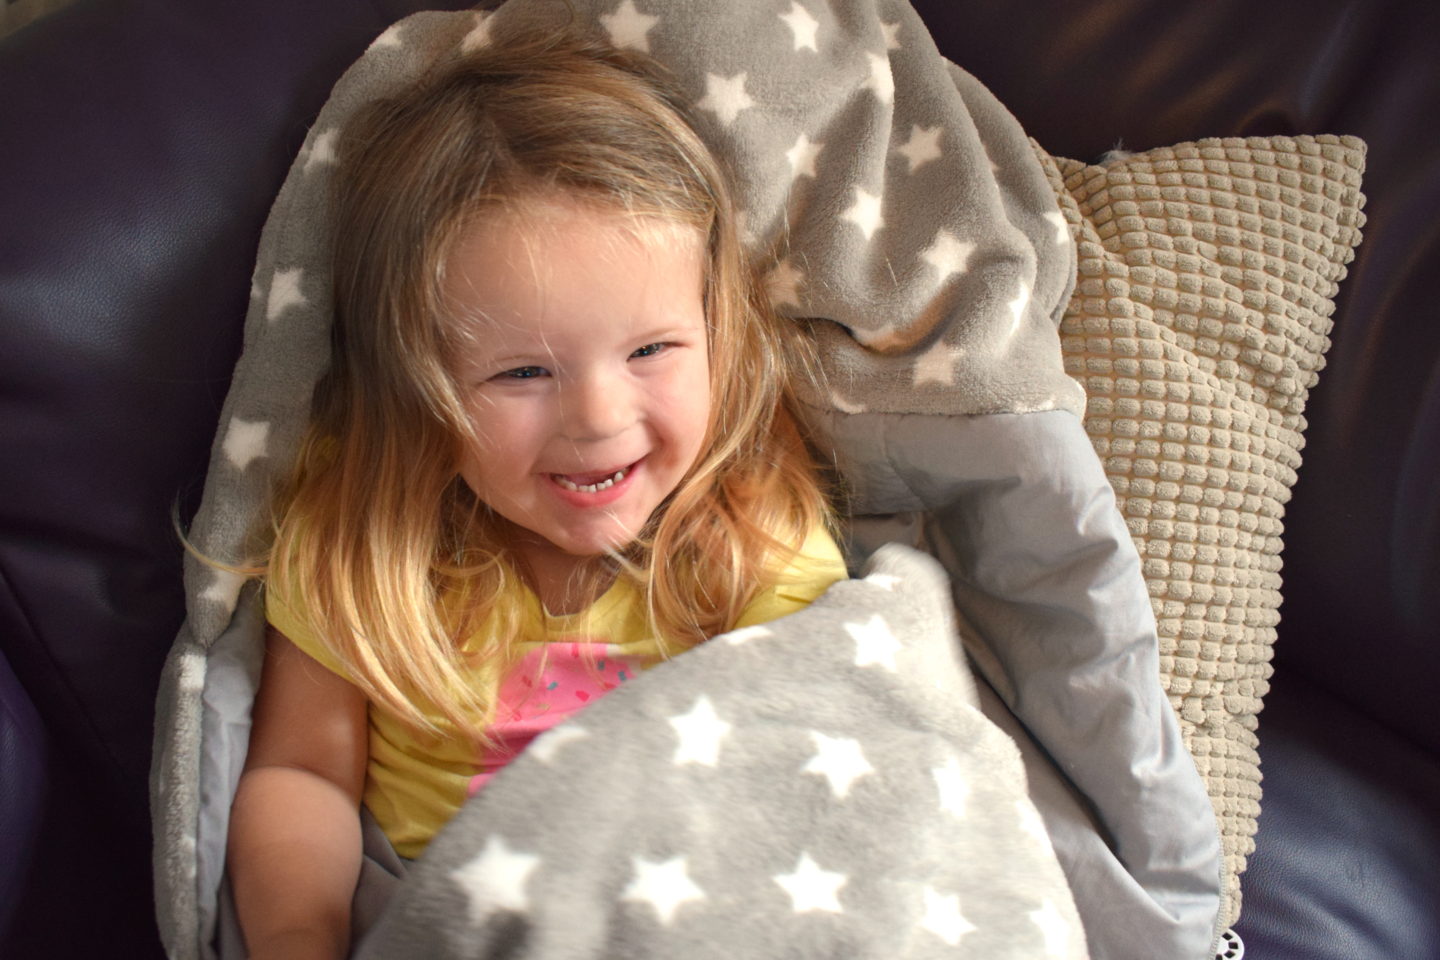 three year old girl in Snuggle Sac on sofa, laughing